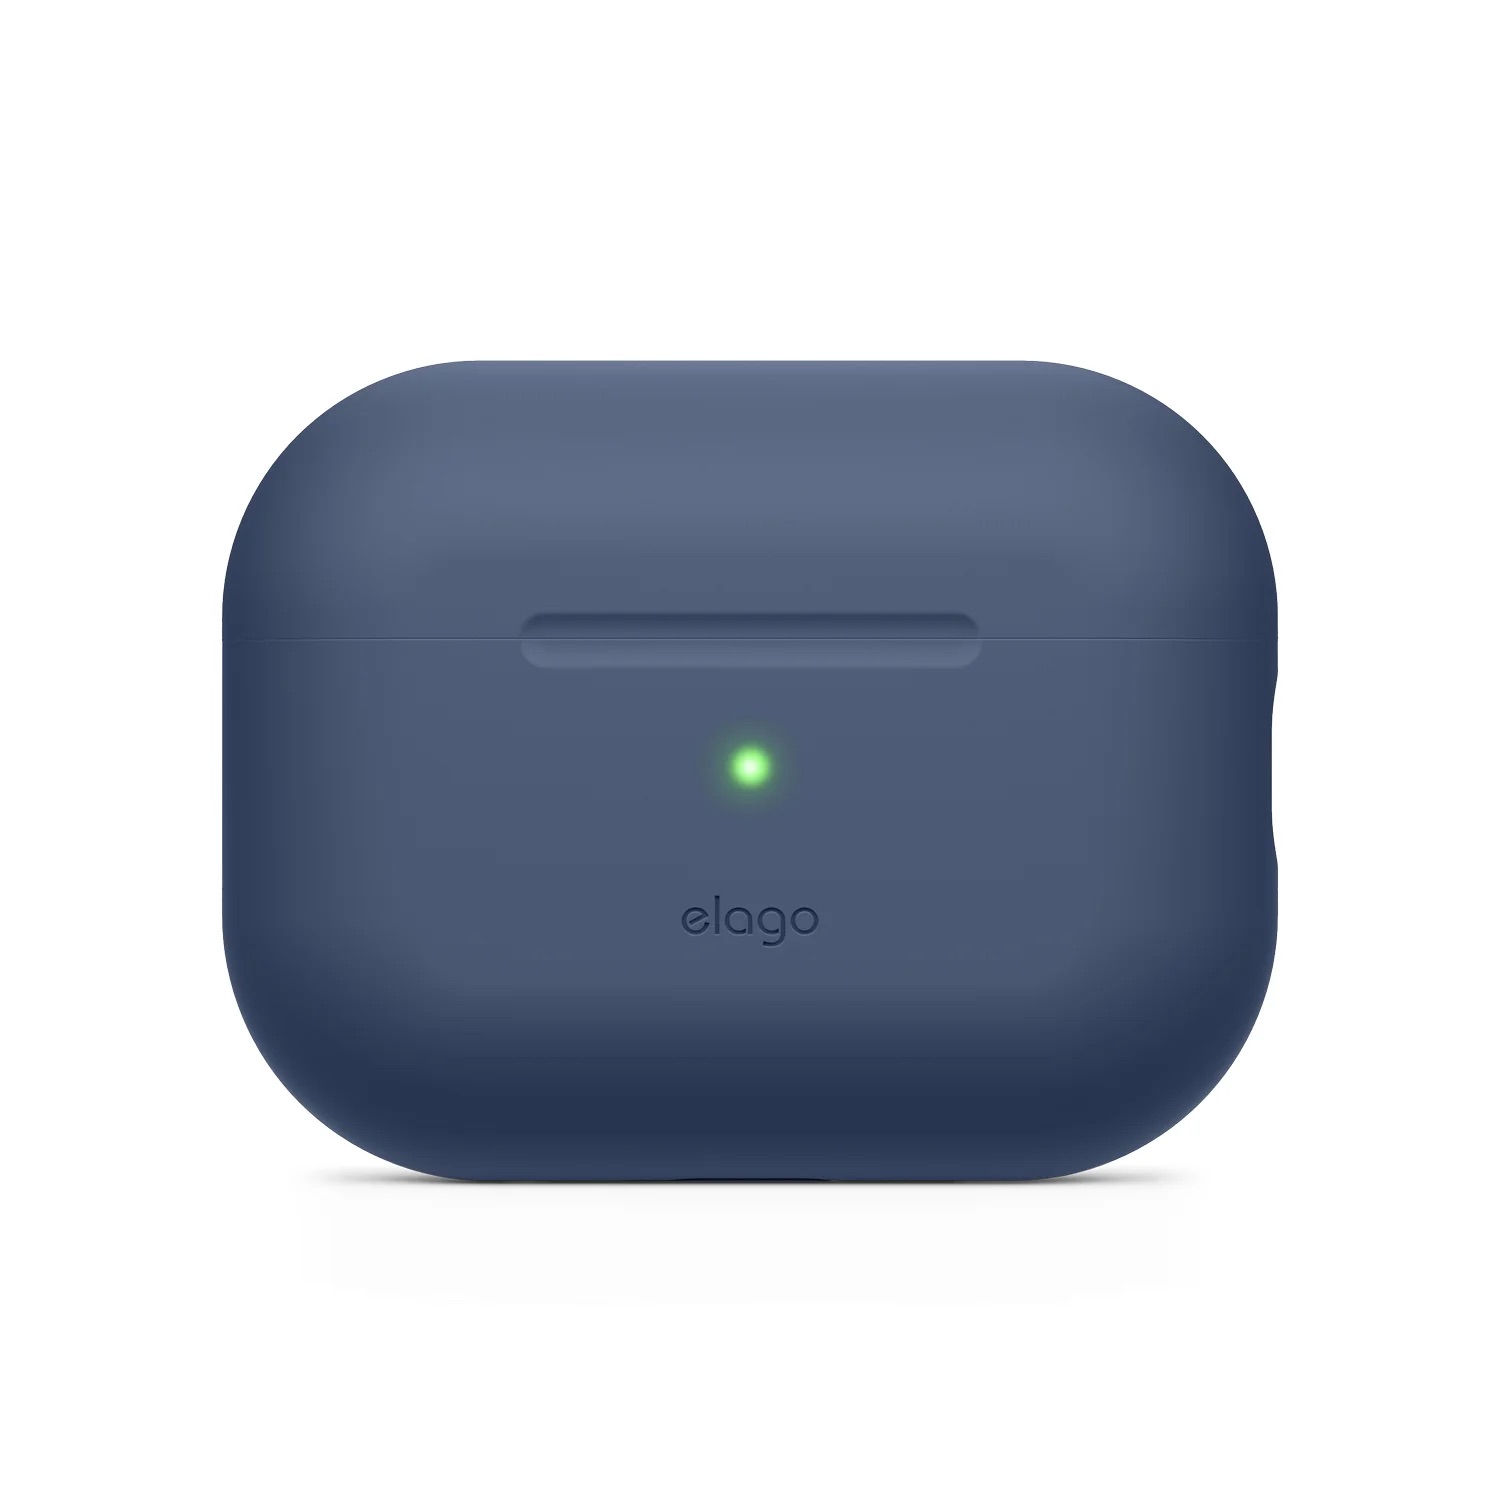 Elago Airpods Pro 2 Silicone Case with Nylon Lanyard - Jean Indigo